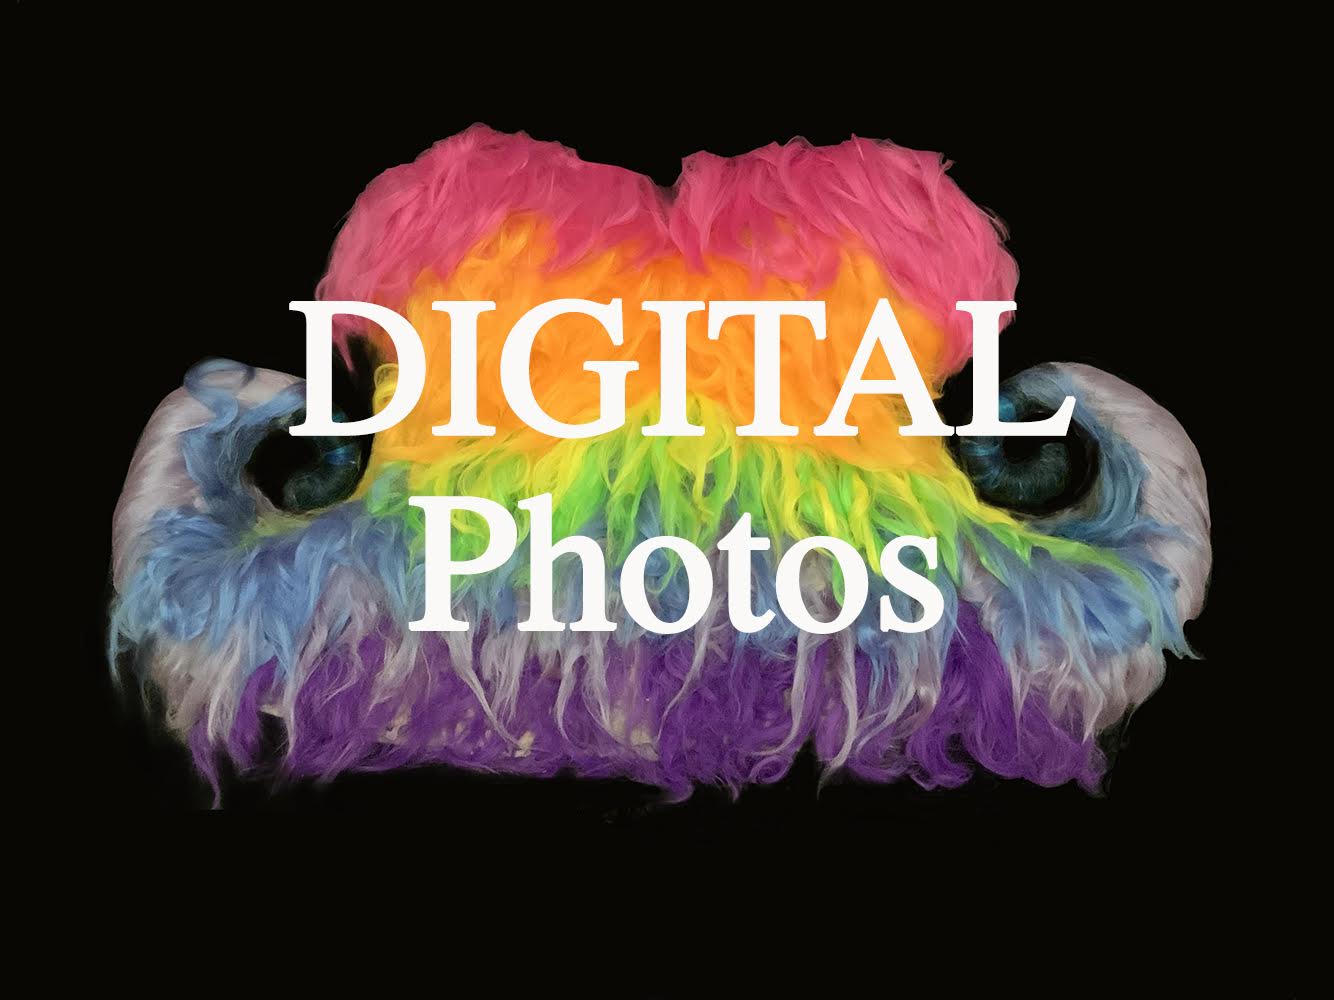 Pearl Renken, "Mustache Ride Digital Photos"